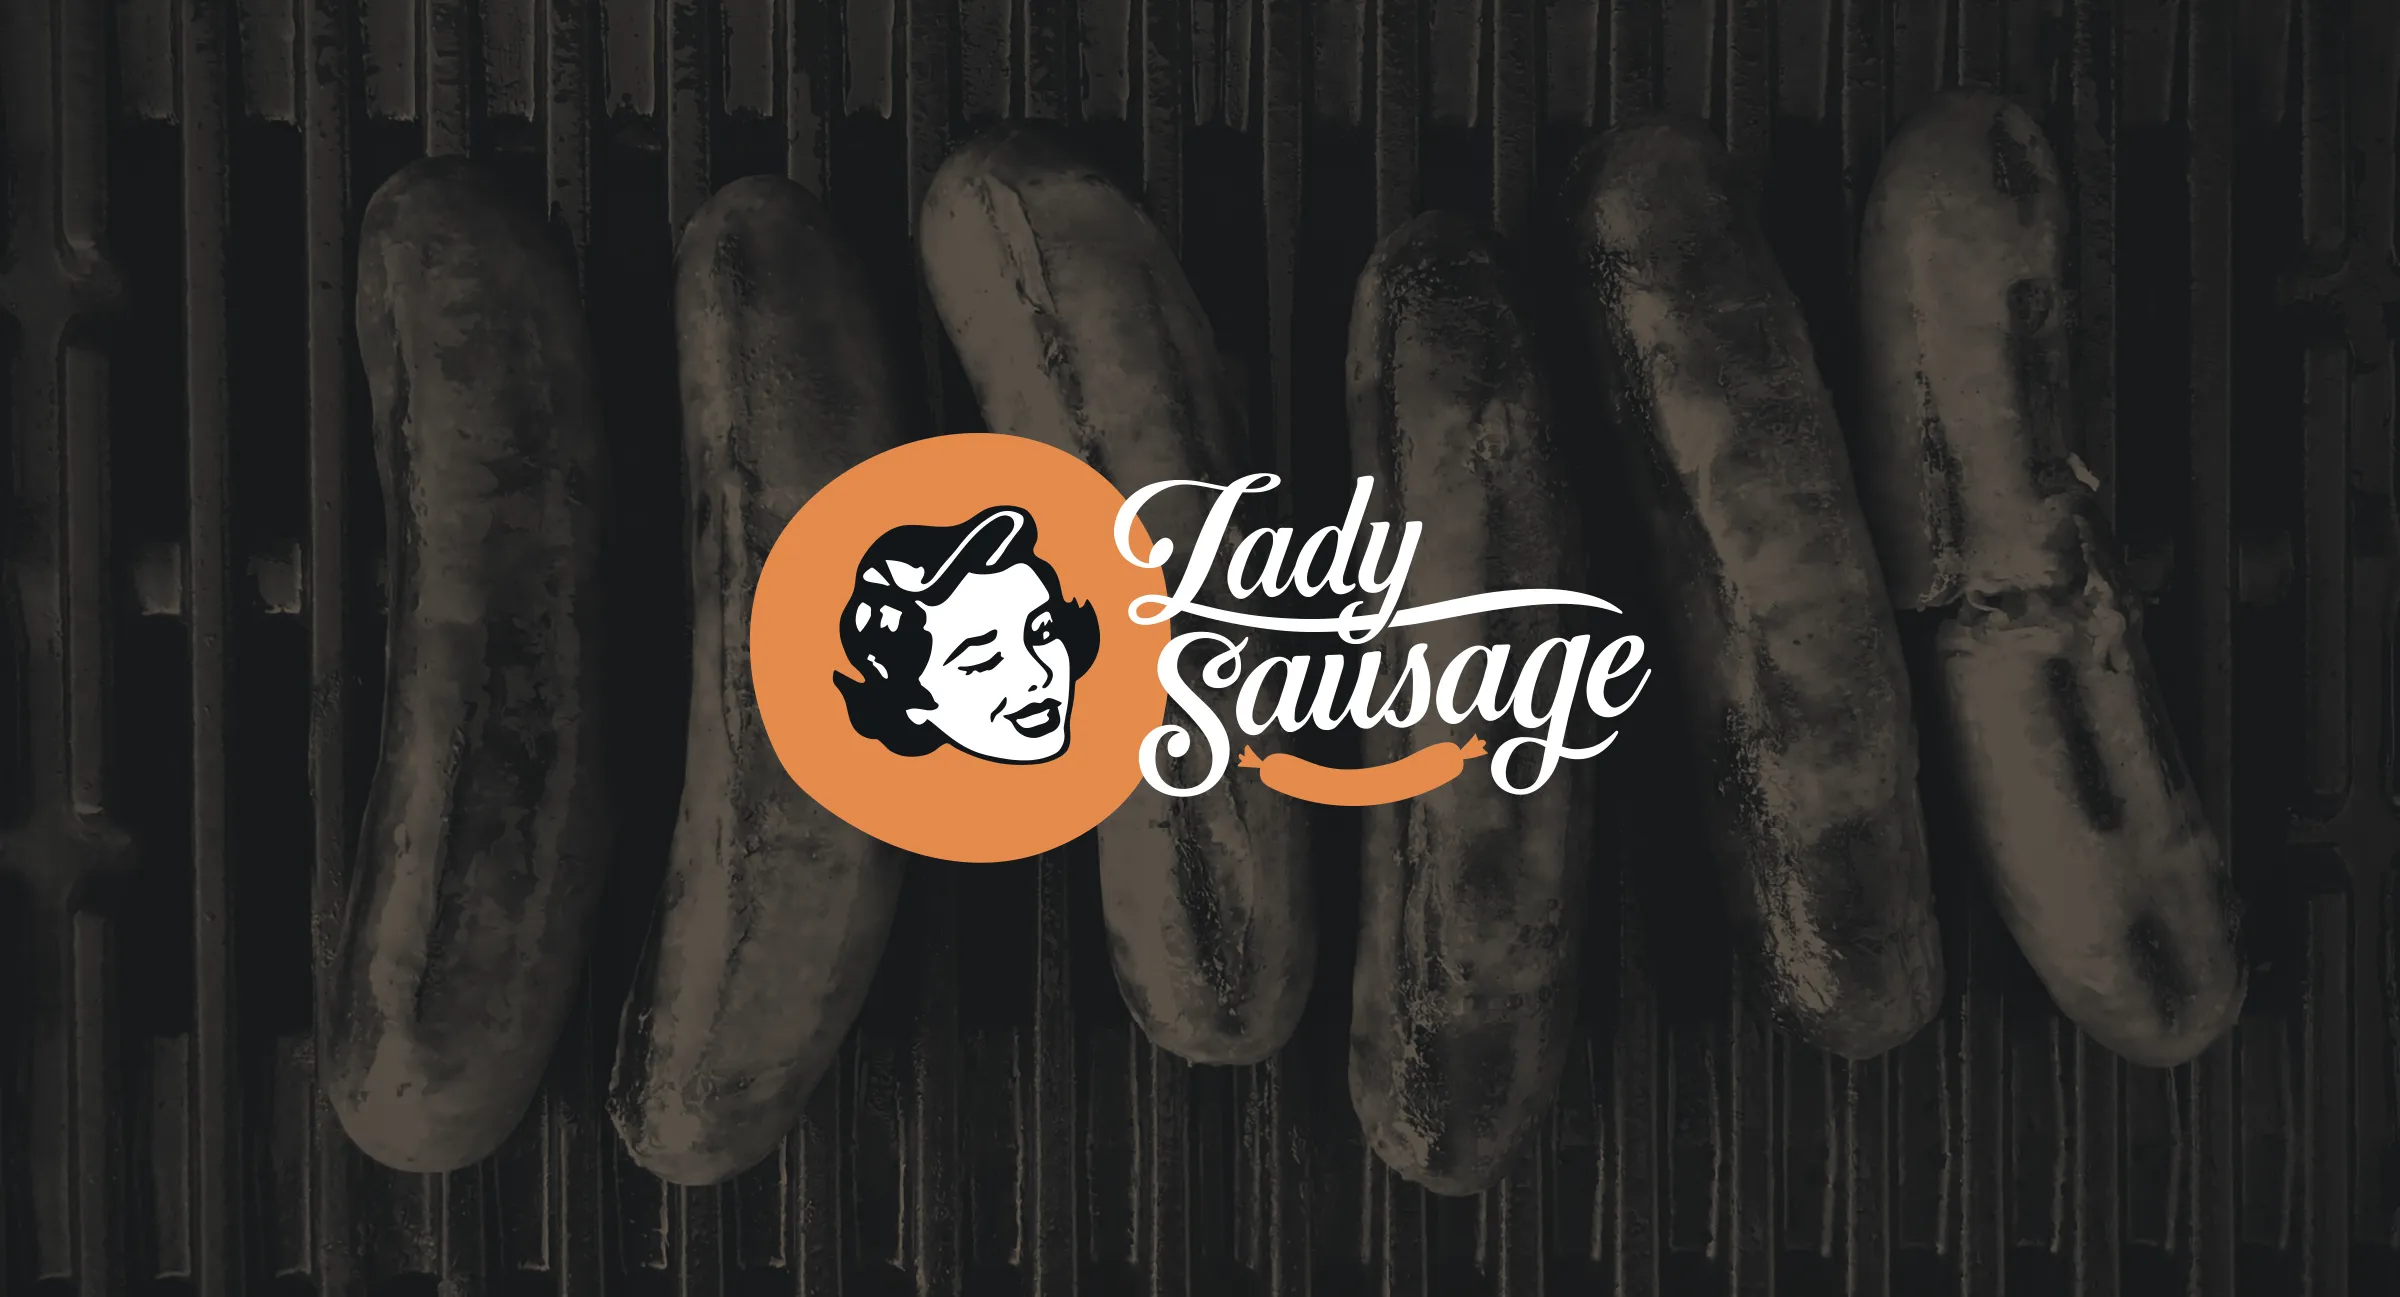 Lady Sausage branding